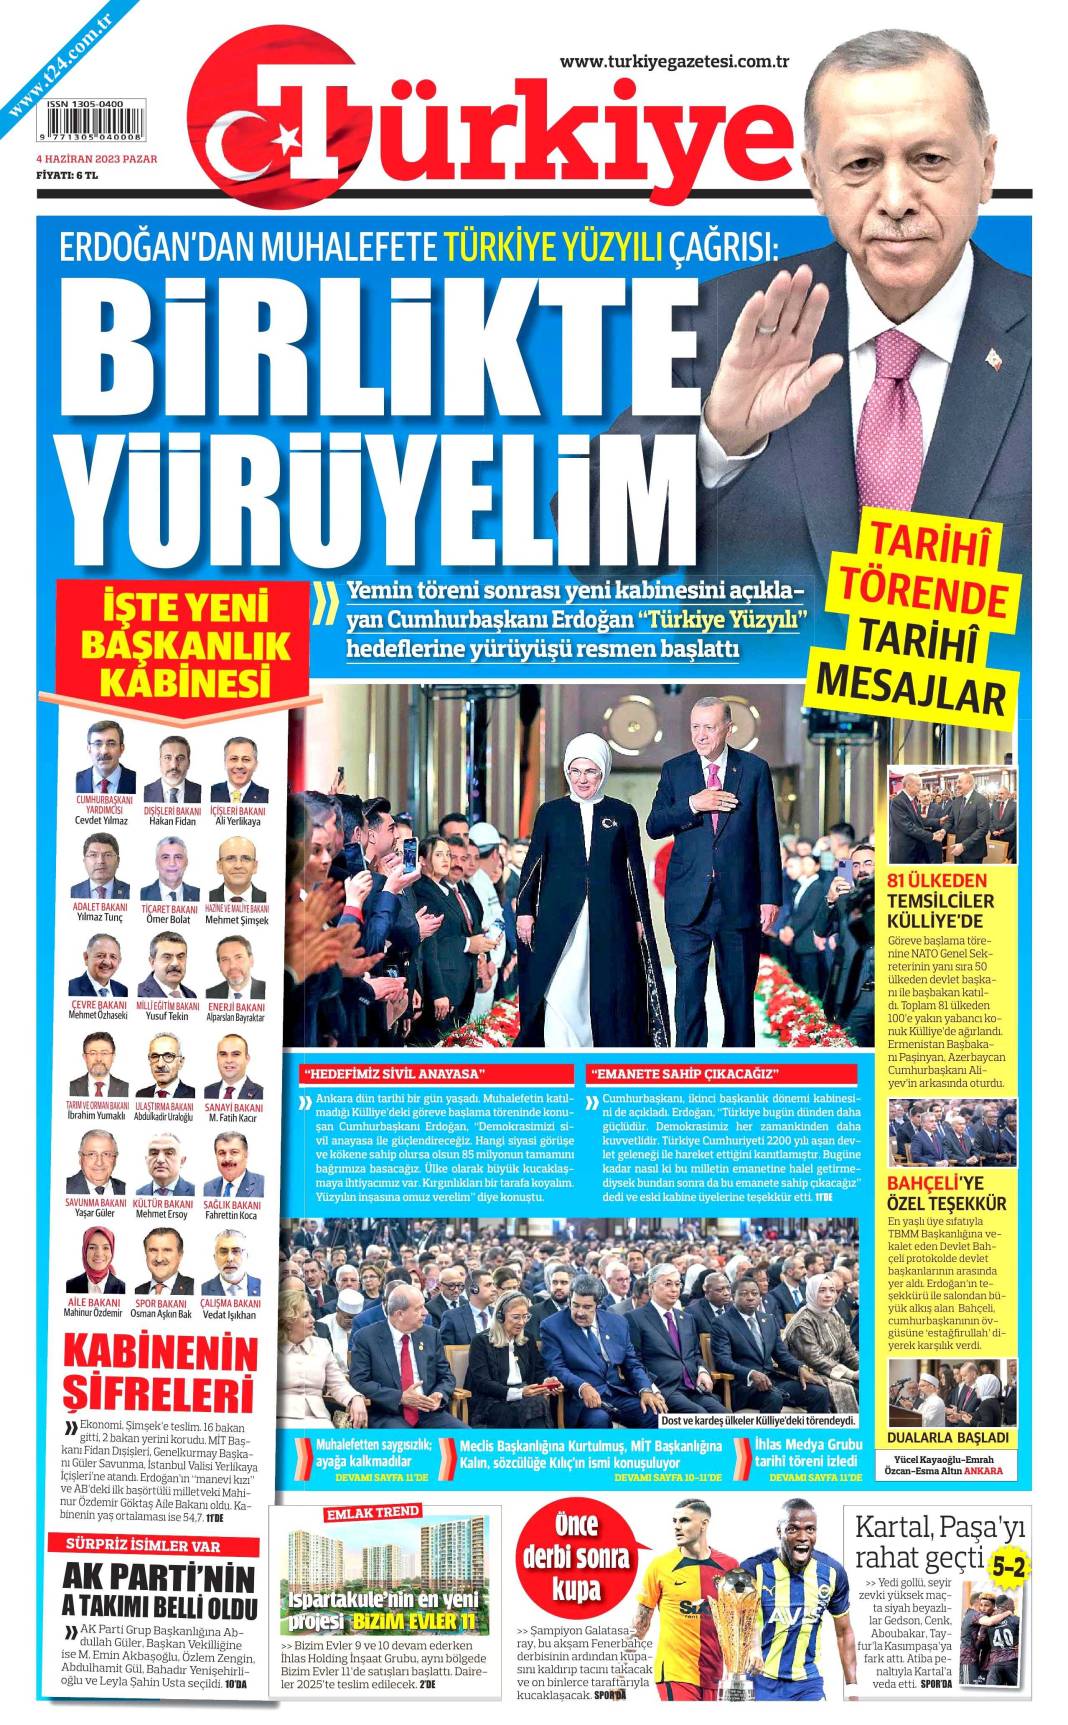 Gazeteler, Erdoğan’ın açıkladığı yeni kabine listesini manşetlerine nasıl taşıdı? İşte günün manşetleri 5